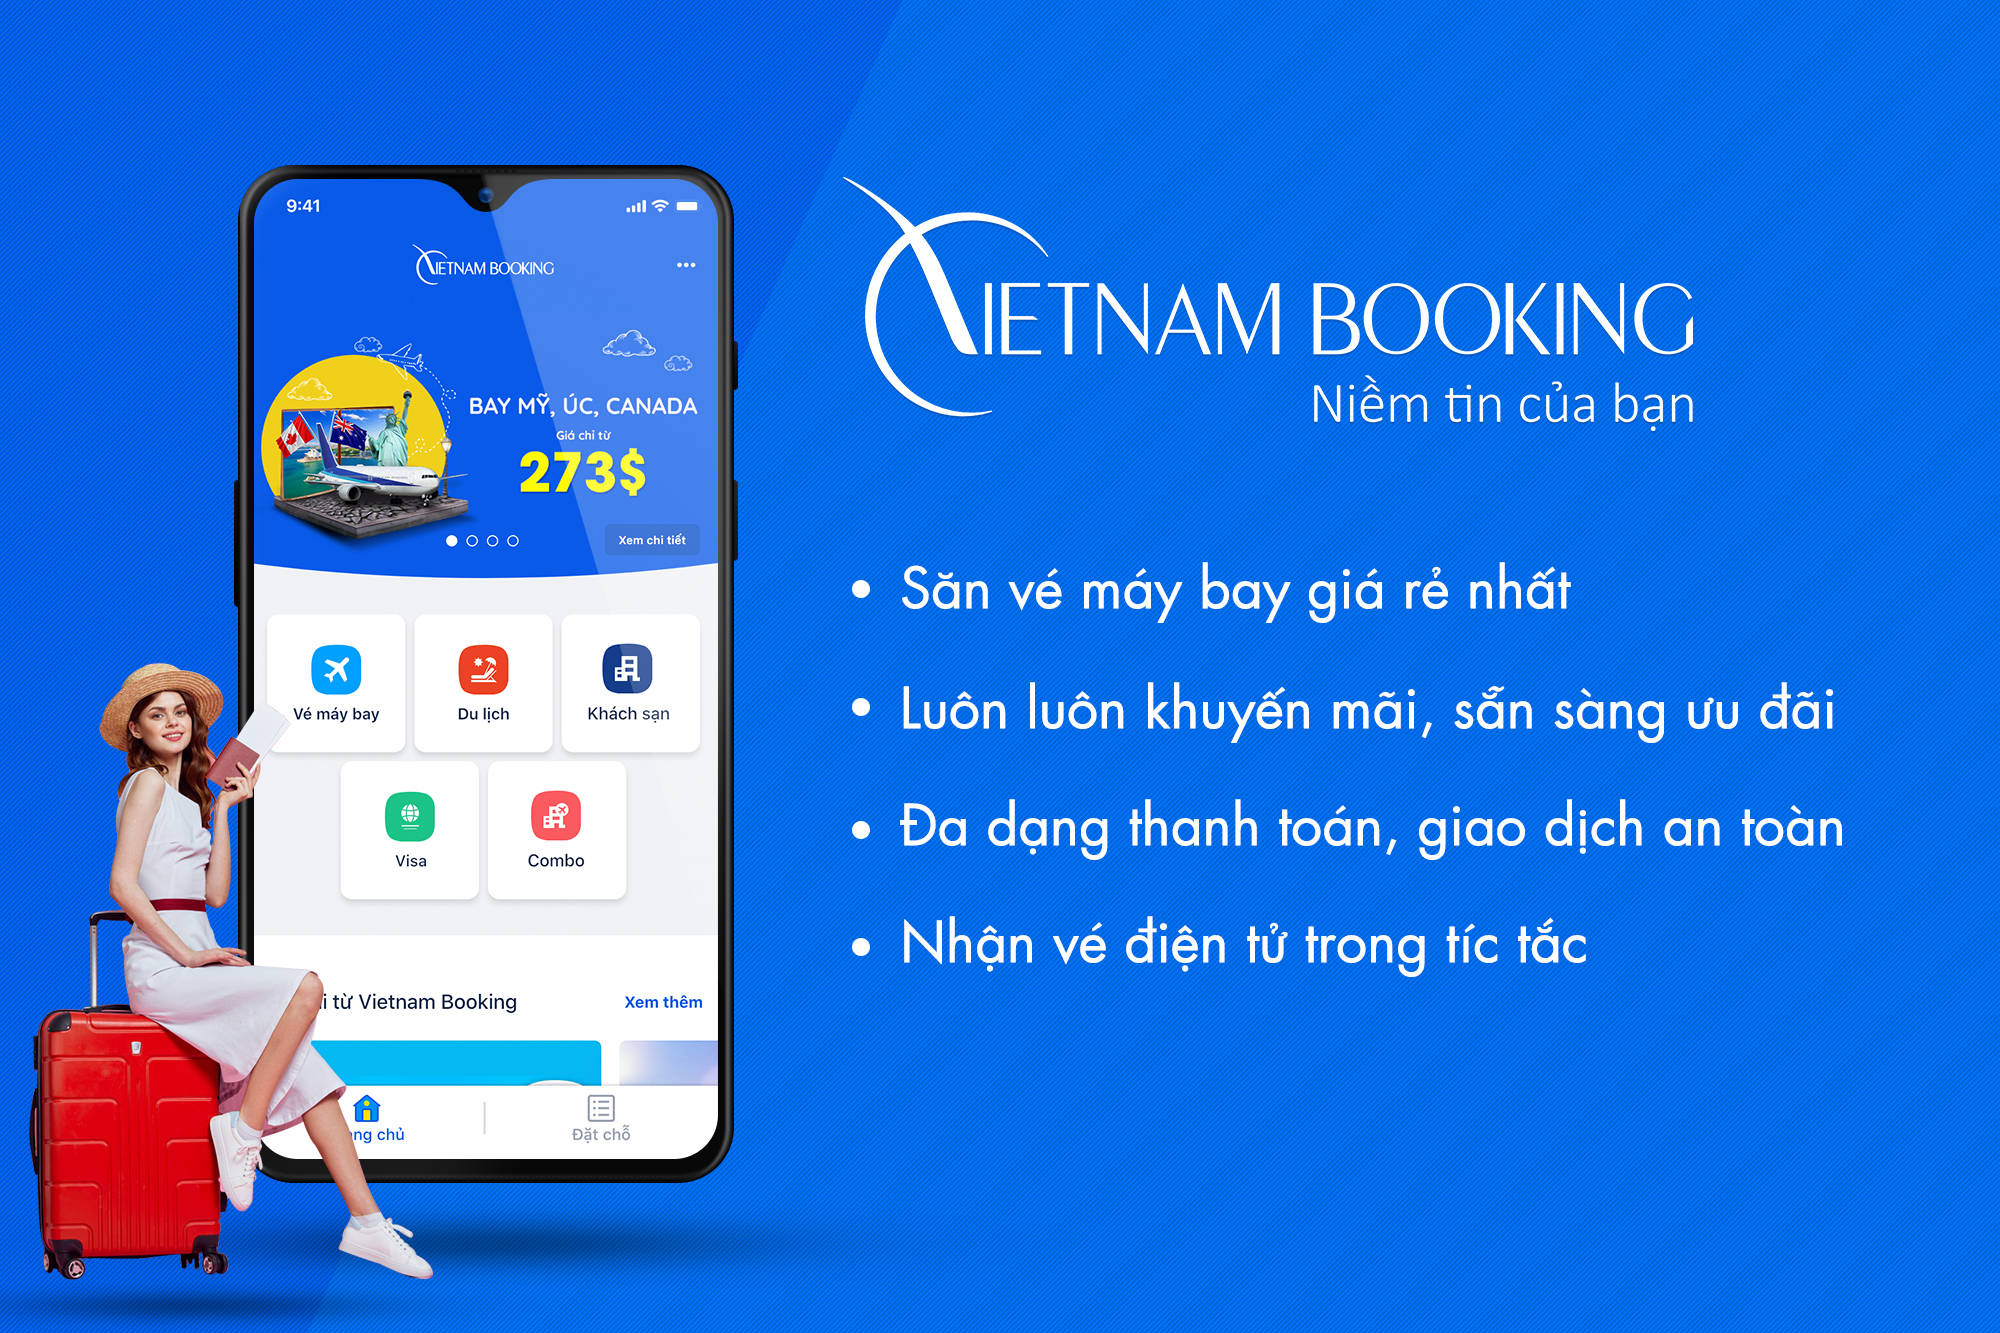 Dịch vụ làm visa Pháp tại TPHCM- dịch vụ Viet Nam Booking